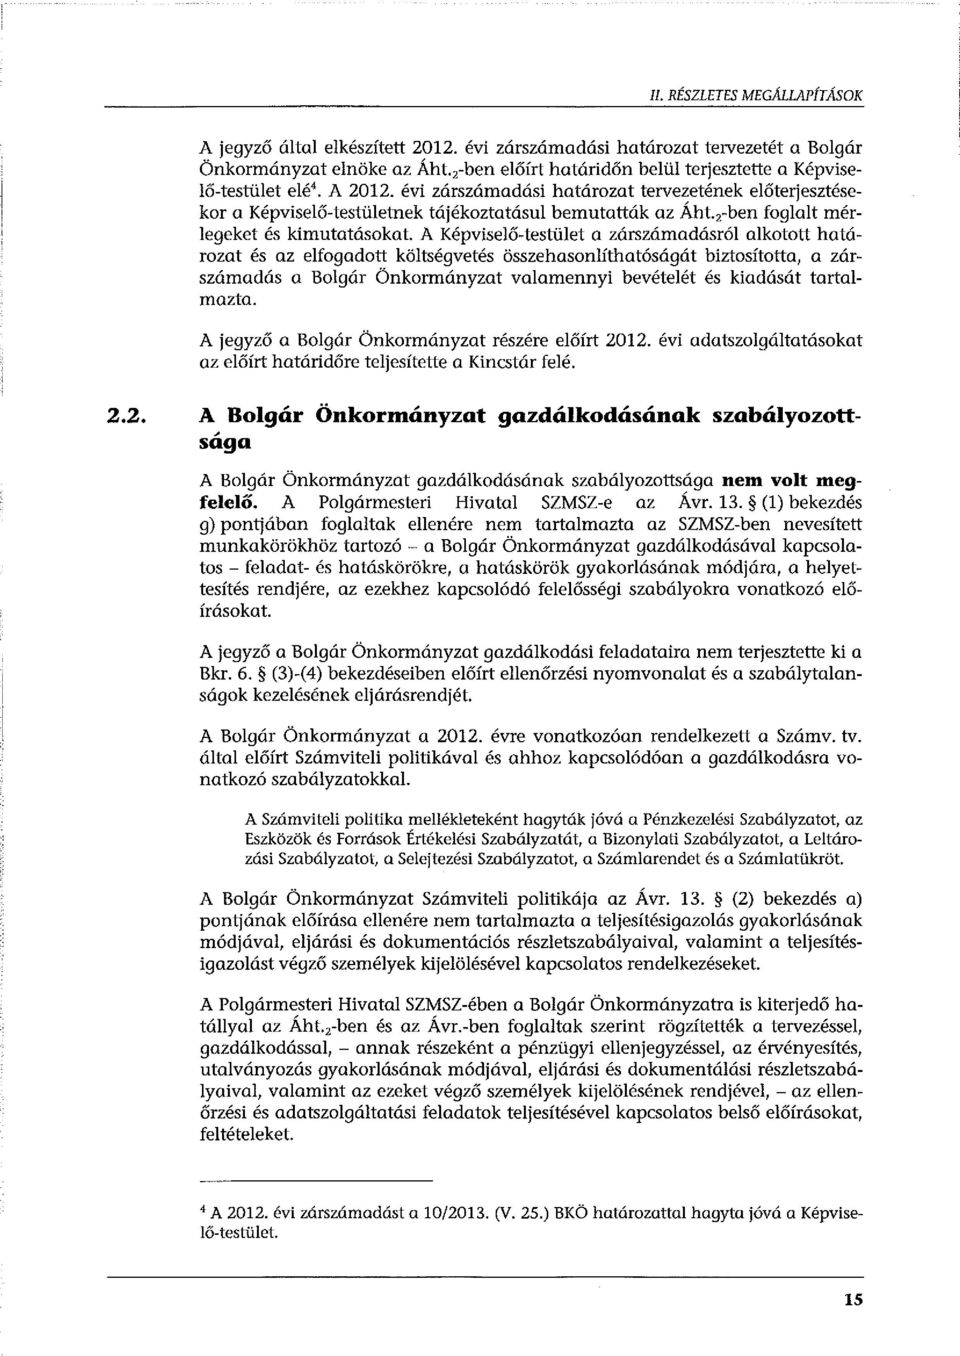 2 -ben foglalt mérlegeket és kimutatásokat A Képviselő-testület a zárszámadásról alkotott határozat és az elfogadott költségvetés összehasonlíthatóságát biztosította, a zárszámadás a Bolgár